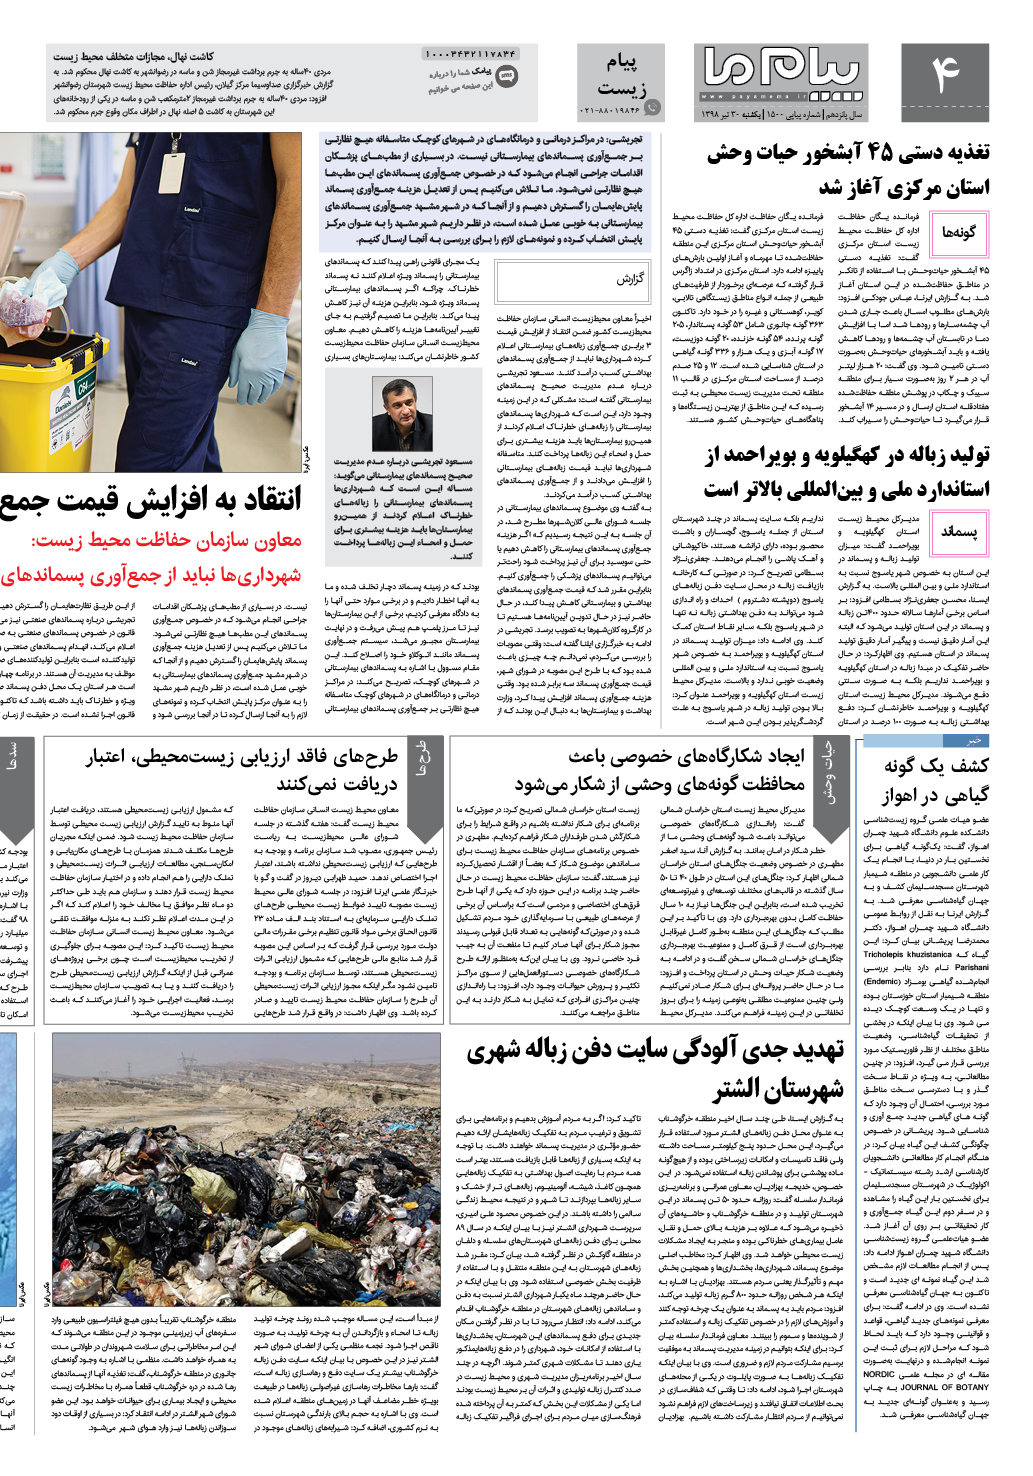 صفحه پیام زیست شماره 1500 روزنامه پیام ما